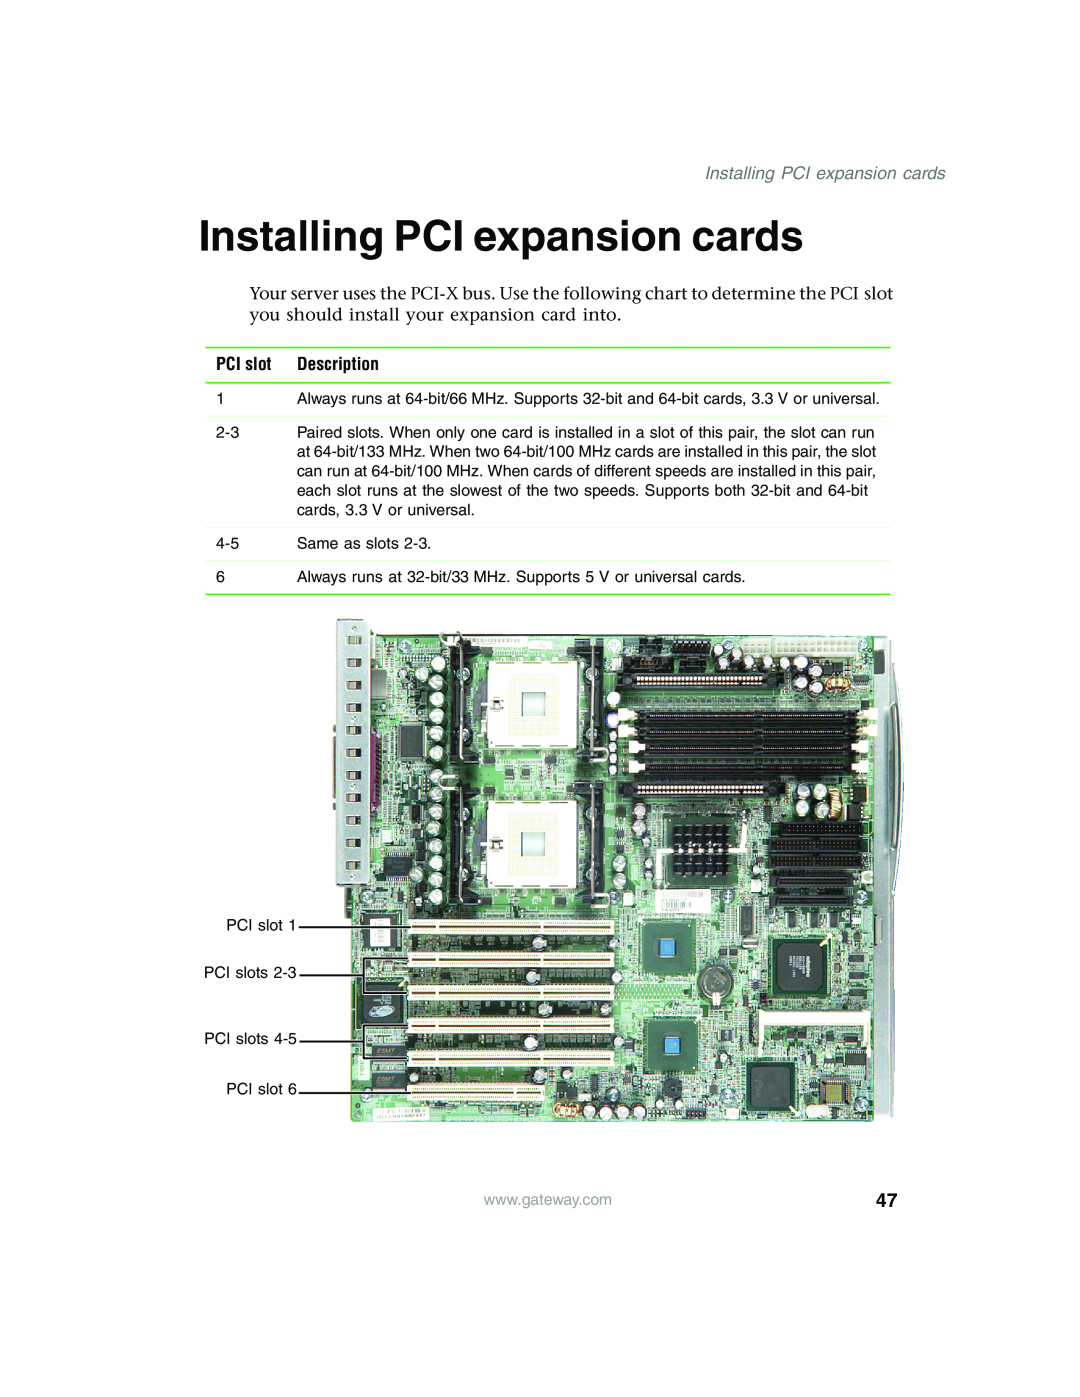 Gateway 980 manual Installing PCI expansion cards, PCI slot, Description 